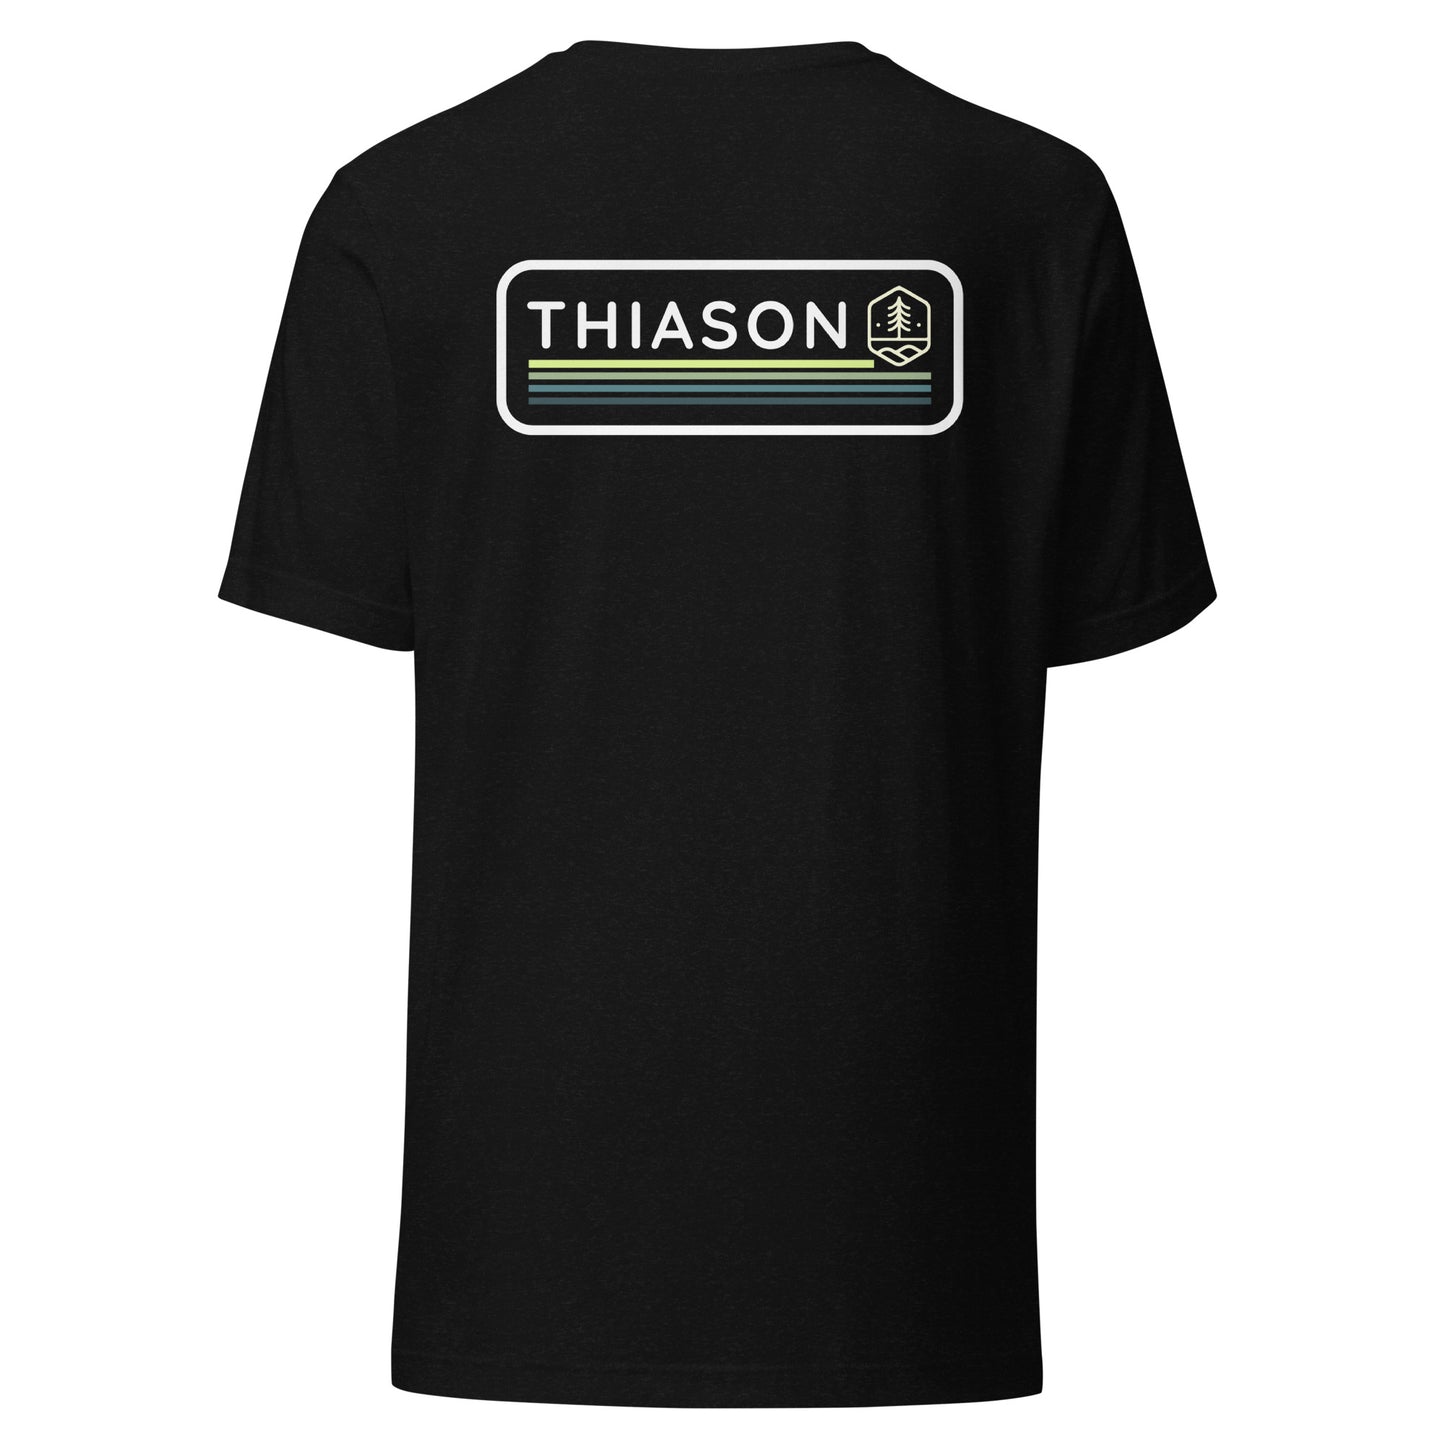 THIASON BAR LOGO  t-shirt